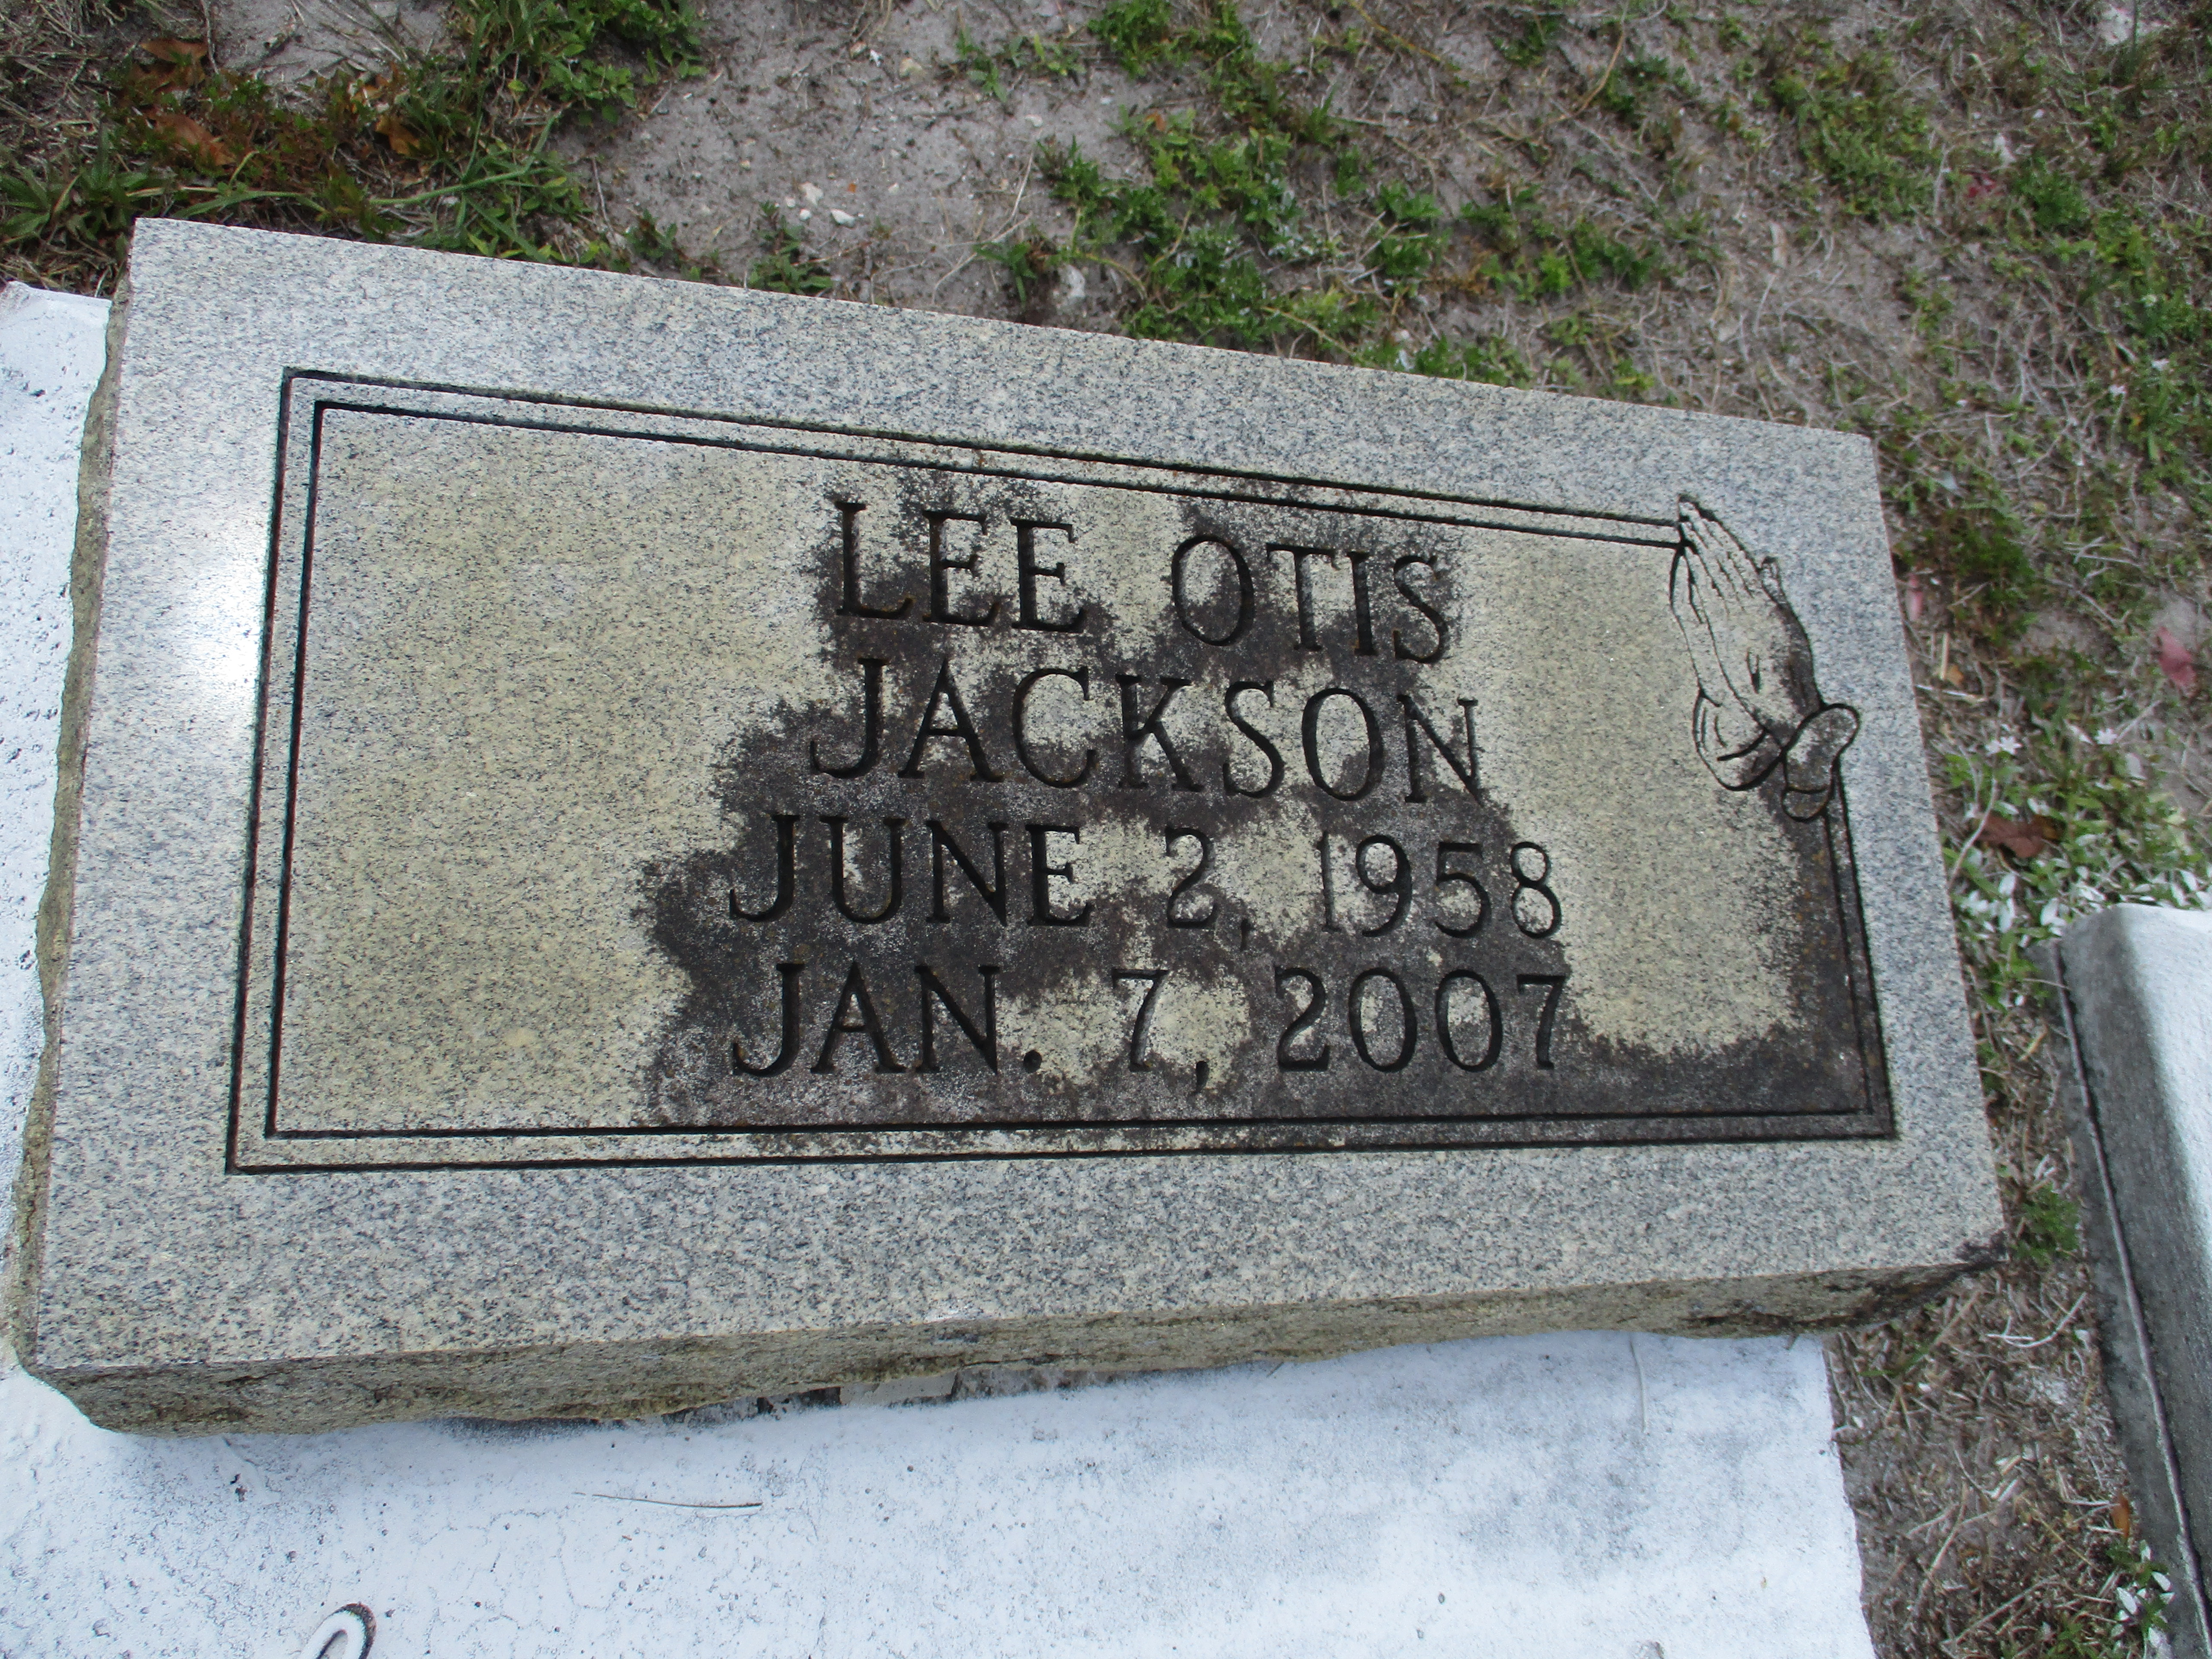 Lee Otis Jackson